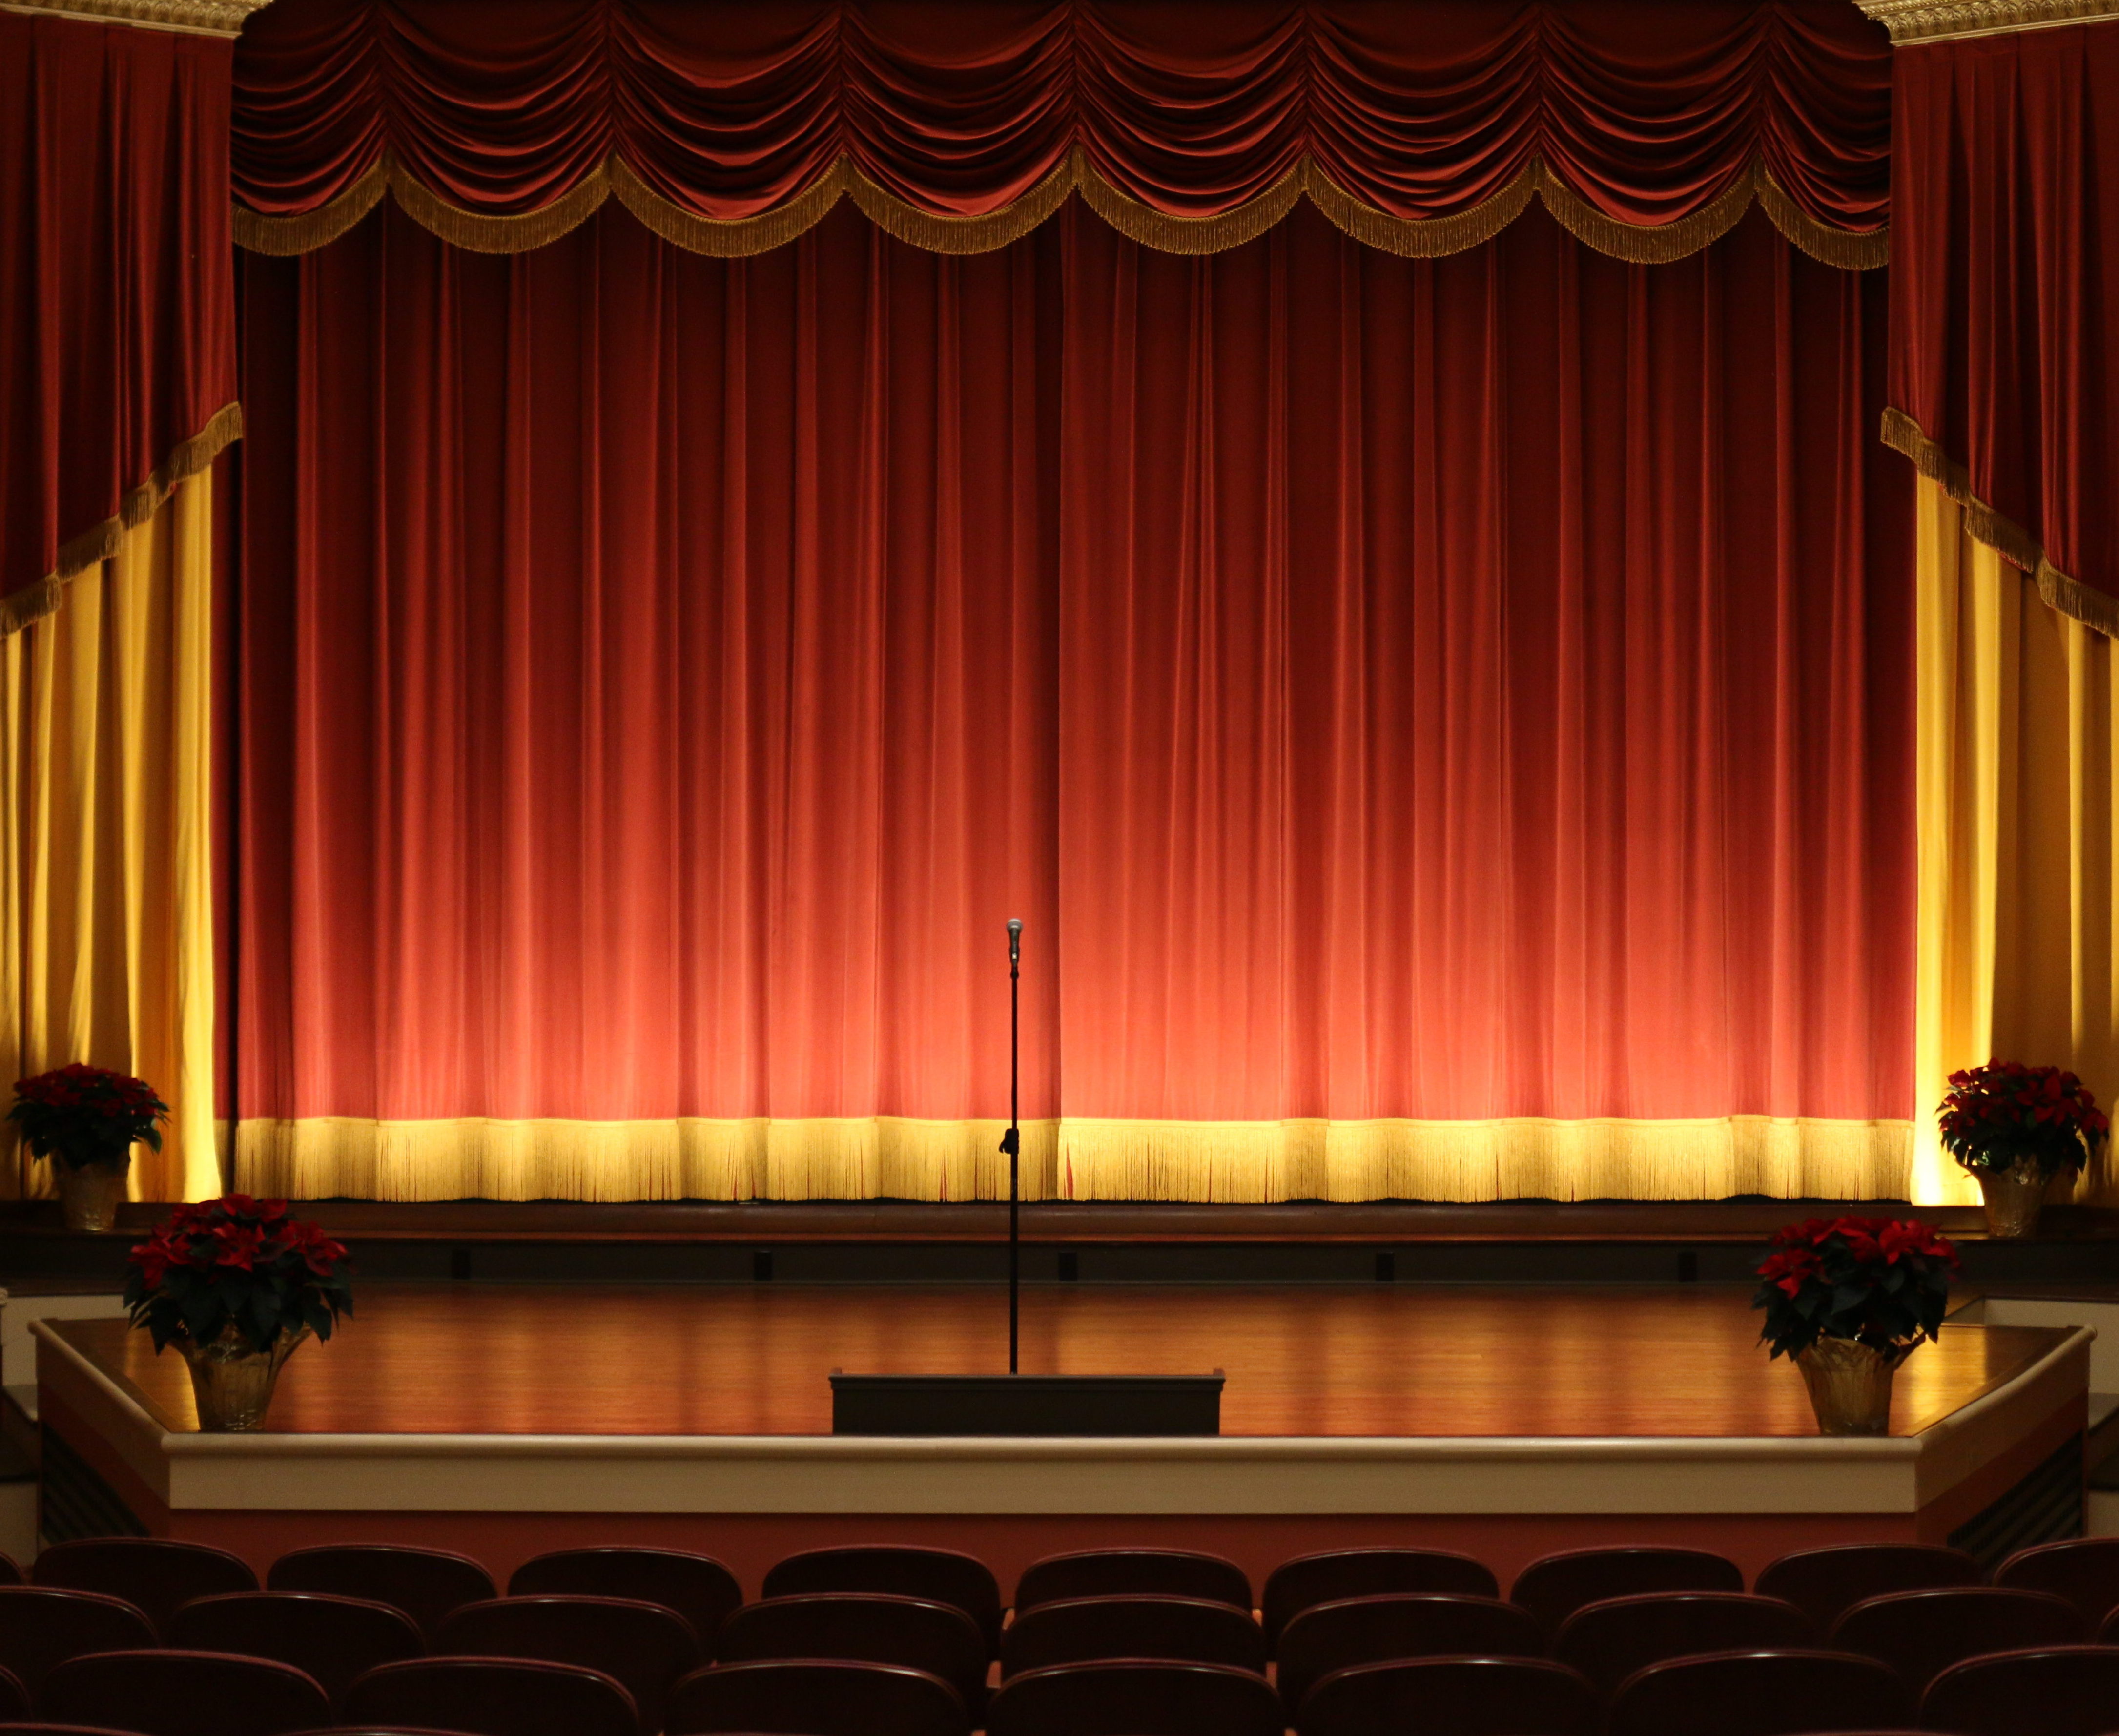 The Luez Theater – A Multi-Purpose Movie Venue in Bolivar, TN